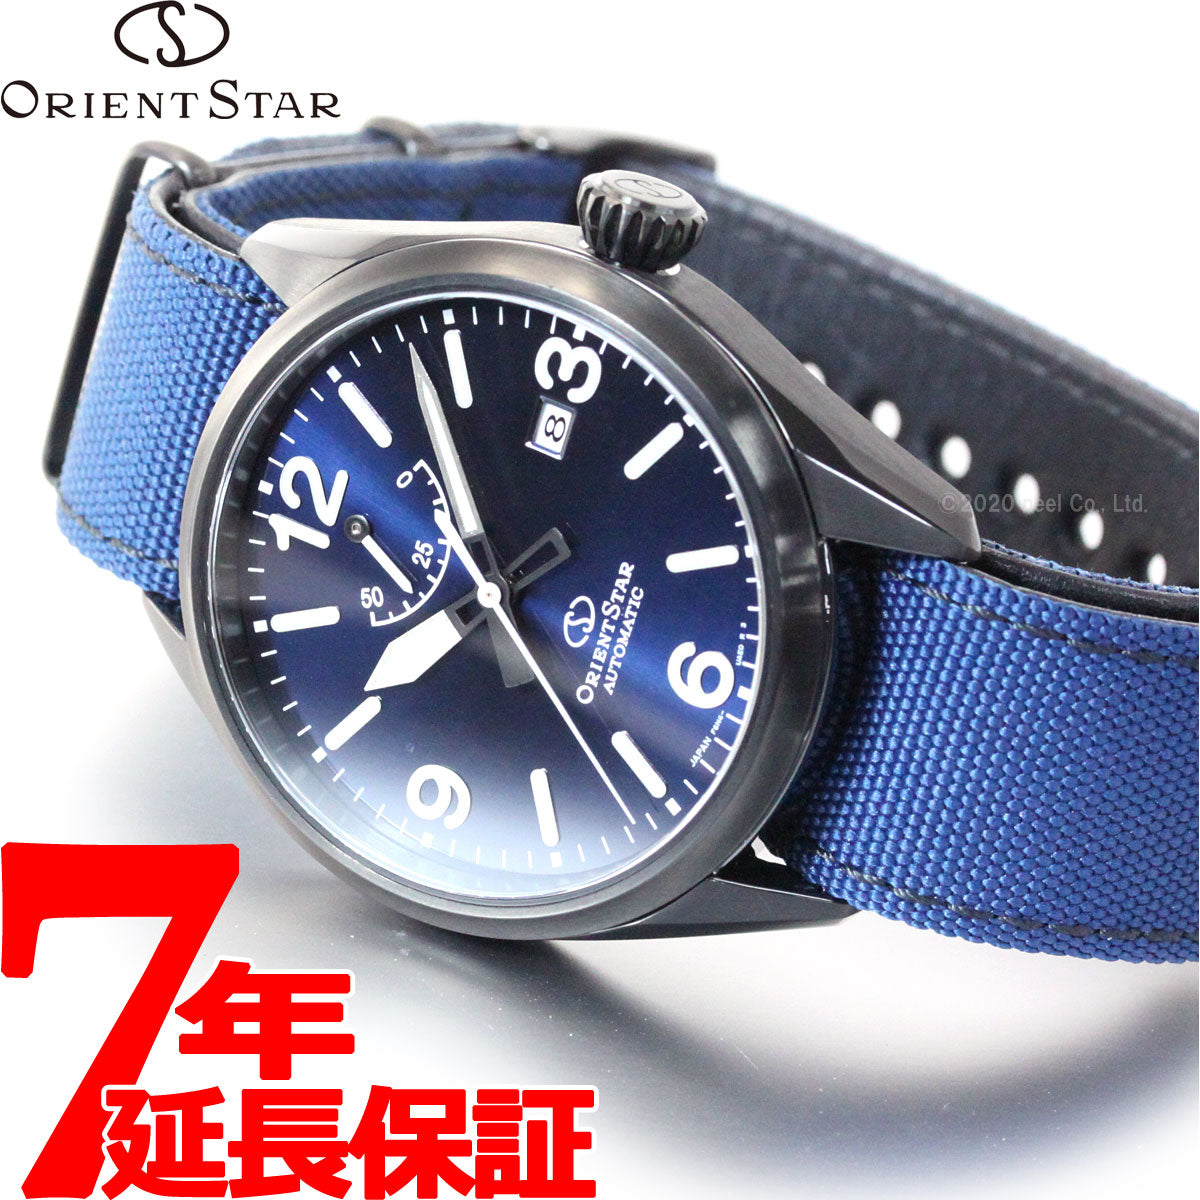 オリエントスター・スポーツ ORIENT STAR SPORTS 自動巻腕時計 - 時計